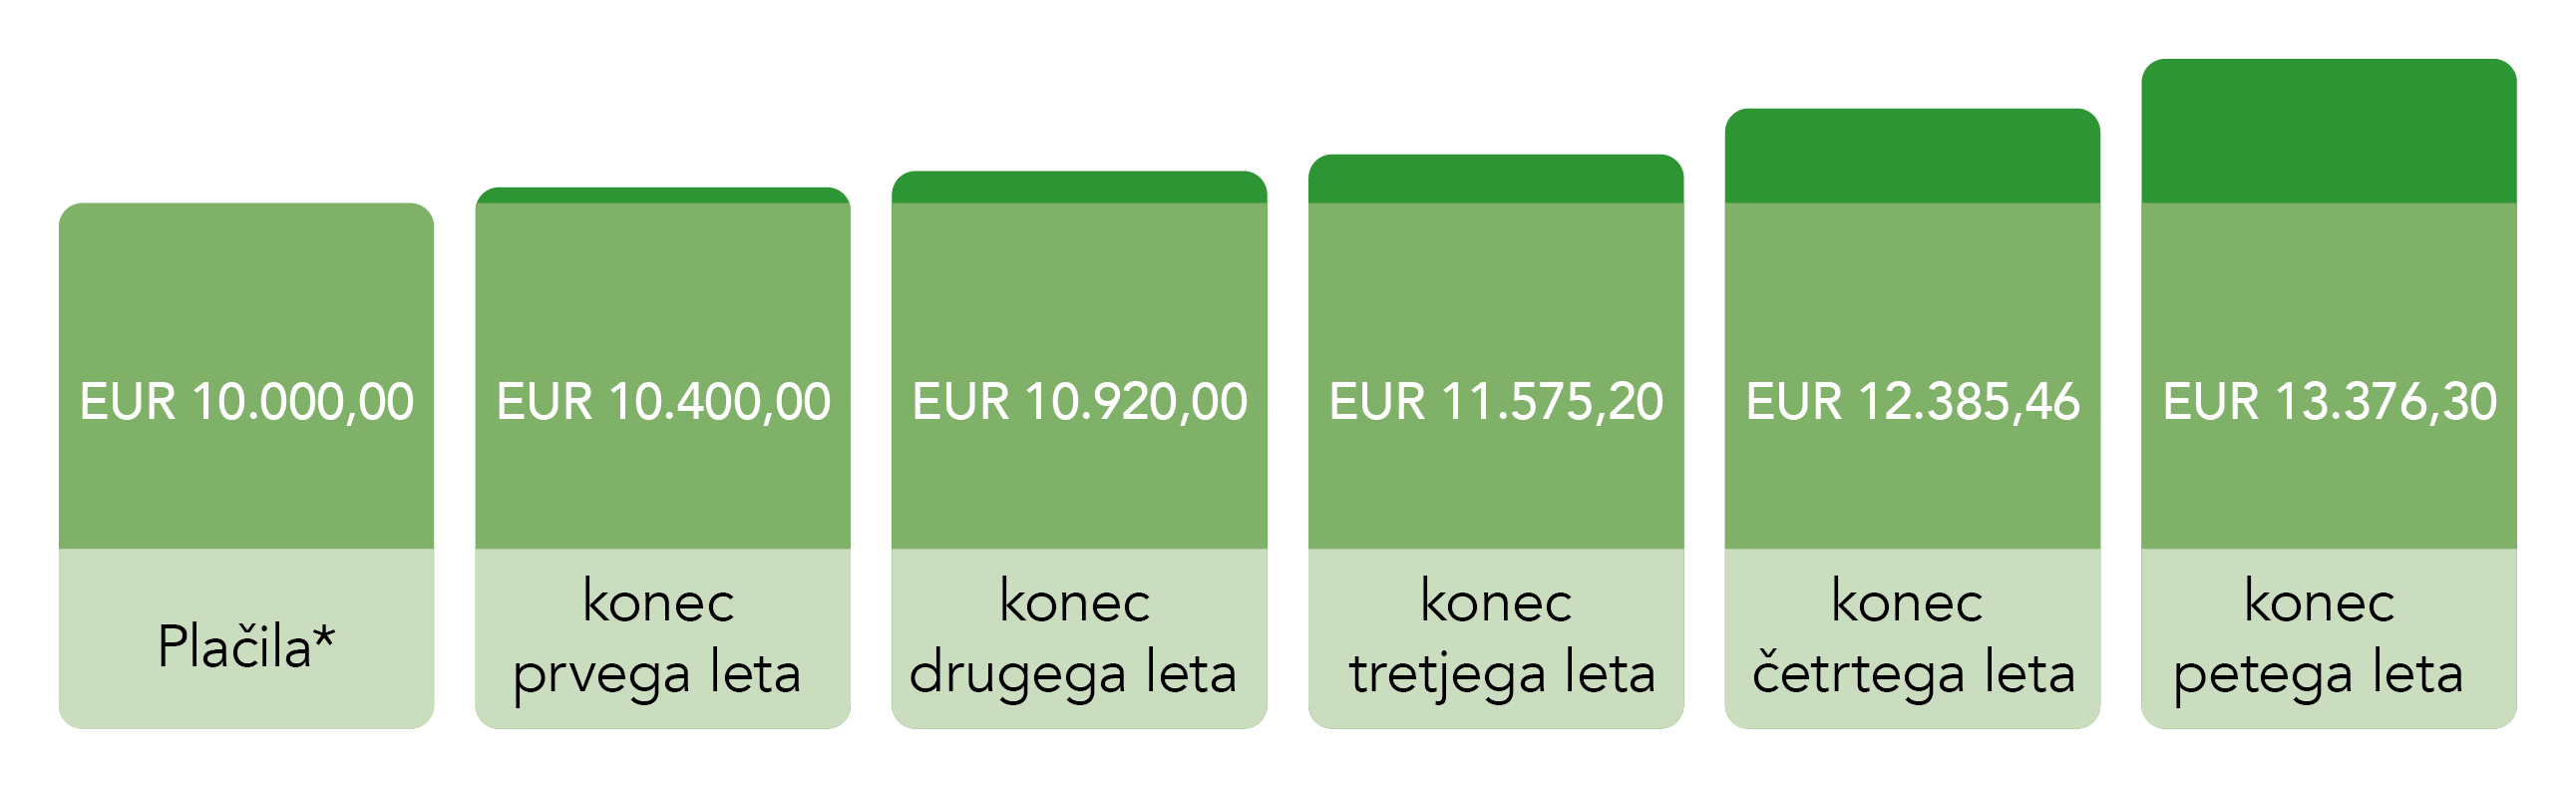 Diagram, ki prikazuje obresti v naslednjih letih po enkratnem plačilu - več informacij je na voljo v opisu slike.